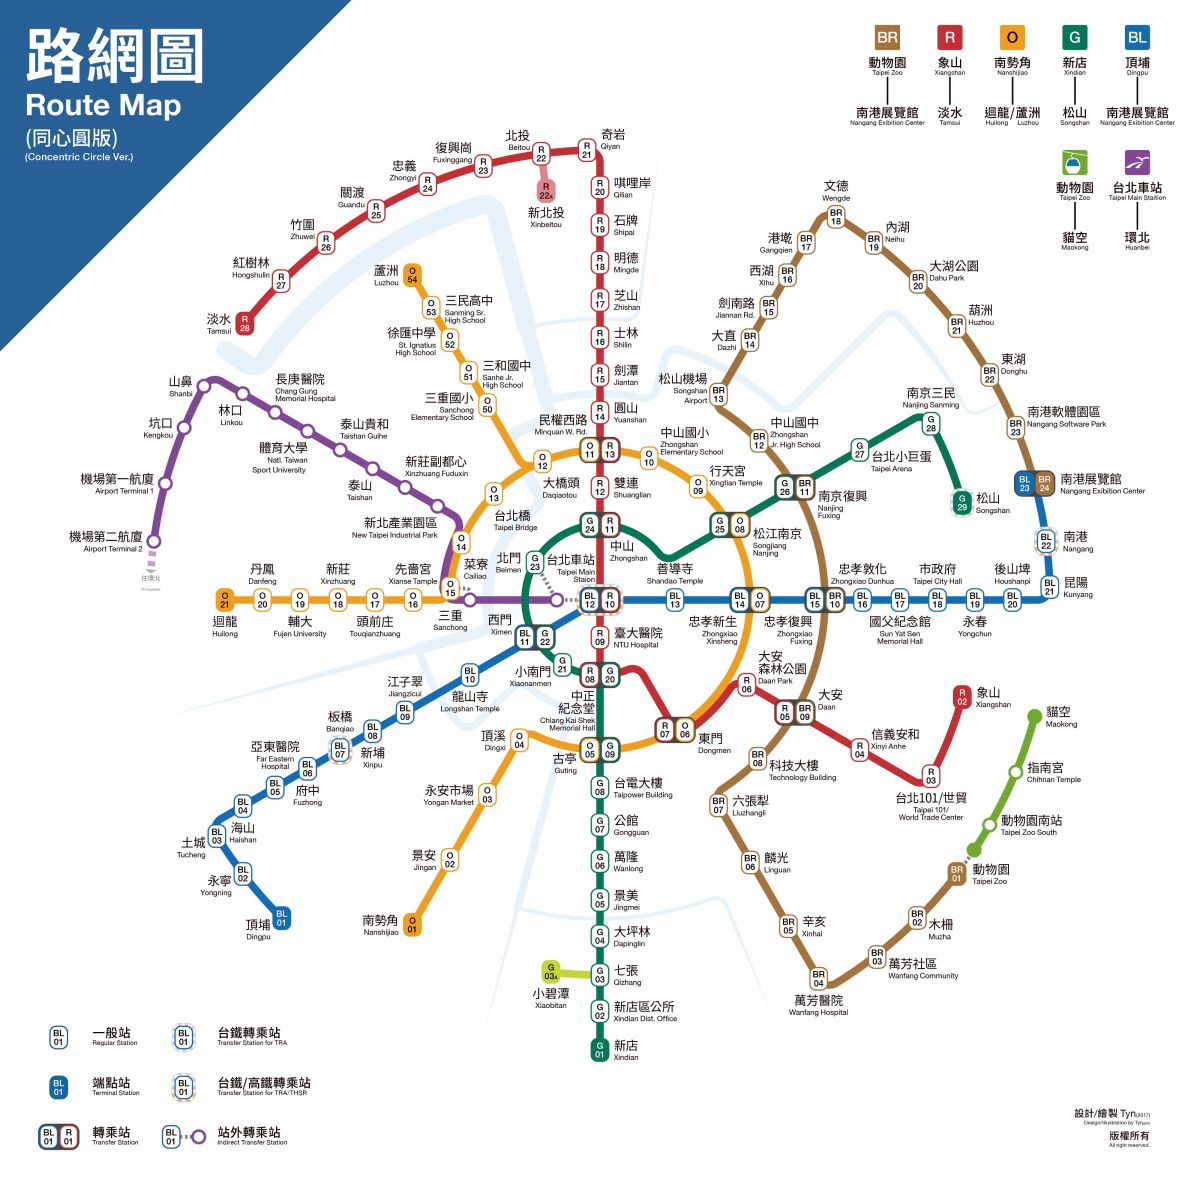 台北捷運好複雜?網友自製「同心圓」路線圖一次搞清楚! | 文章內置圖片